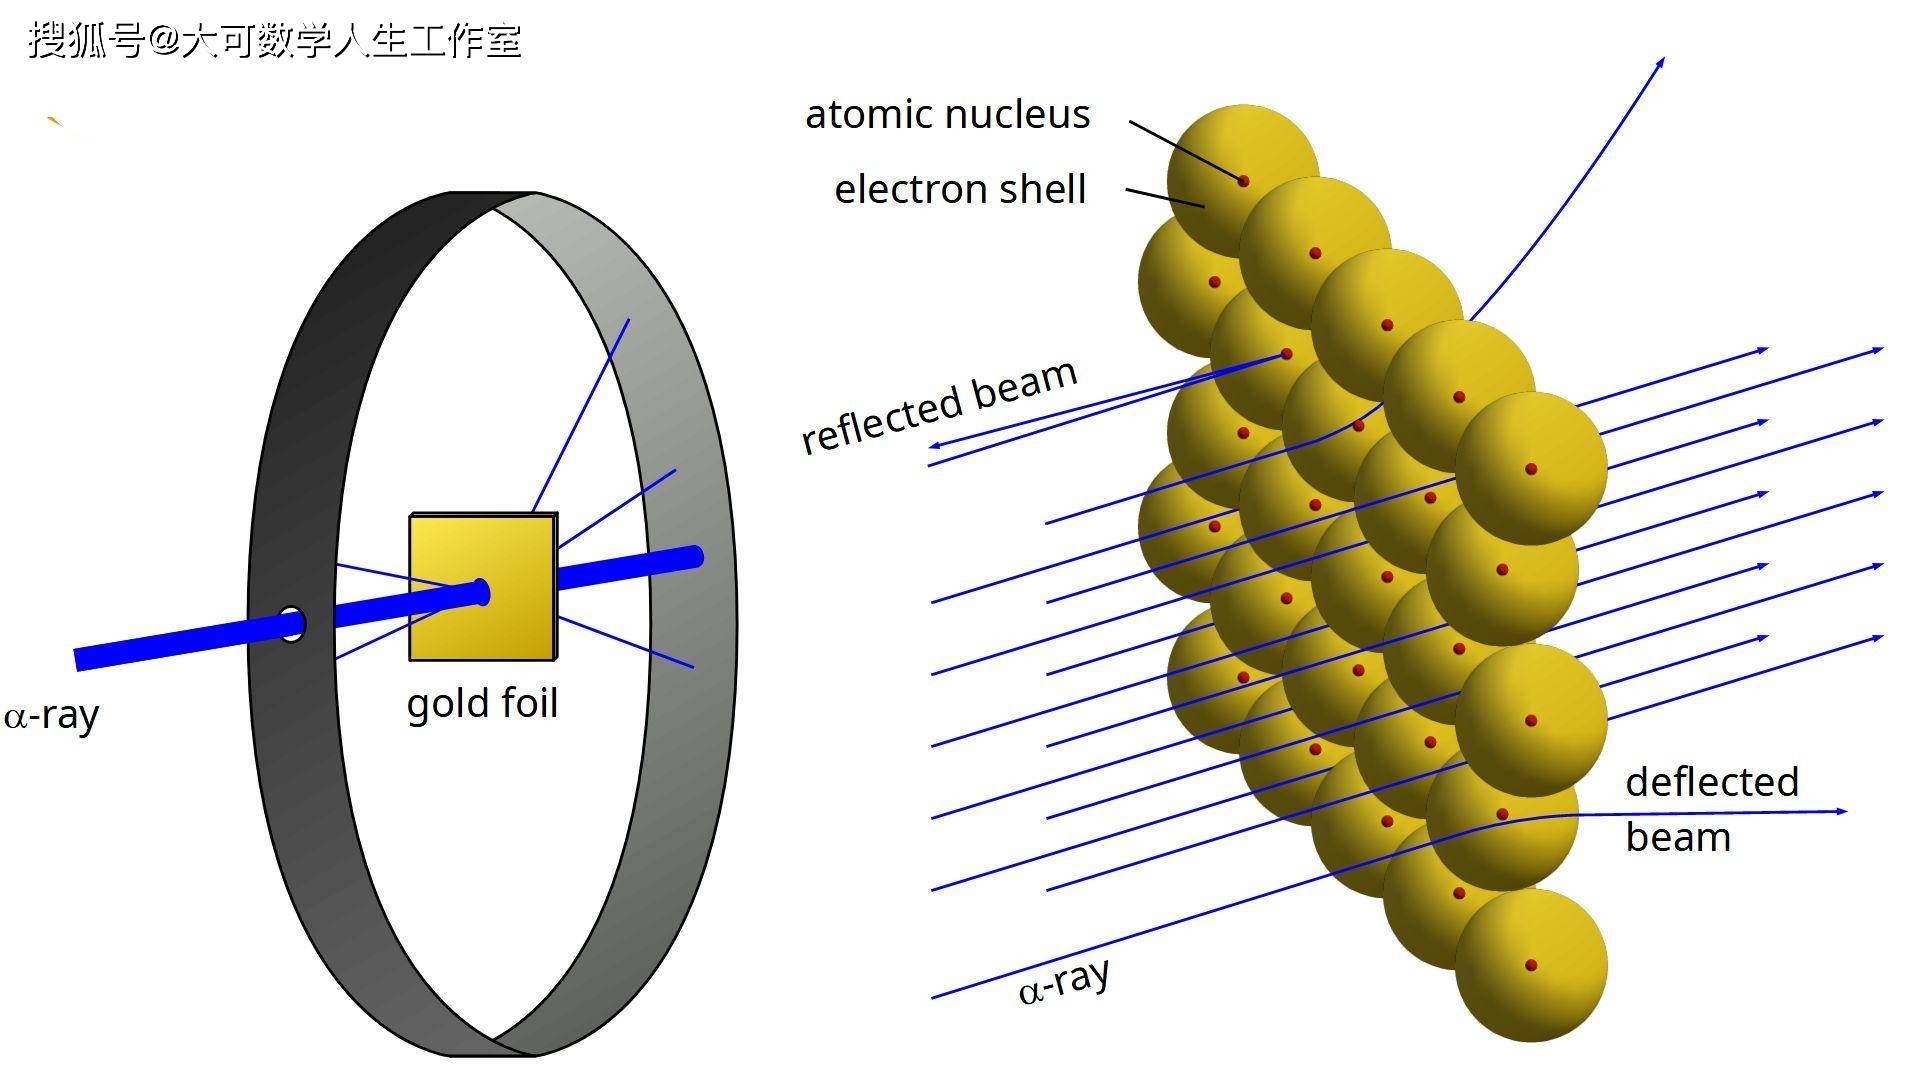 在1911年,英国物理学家卢瑟福根据α粒子散射实验的结果,提出了原子核